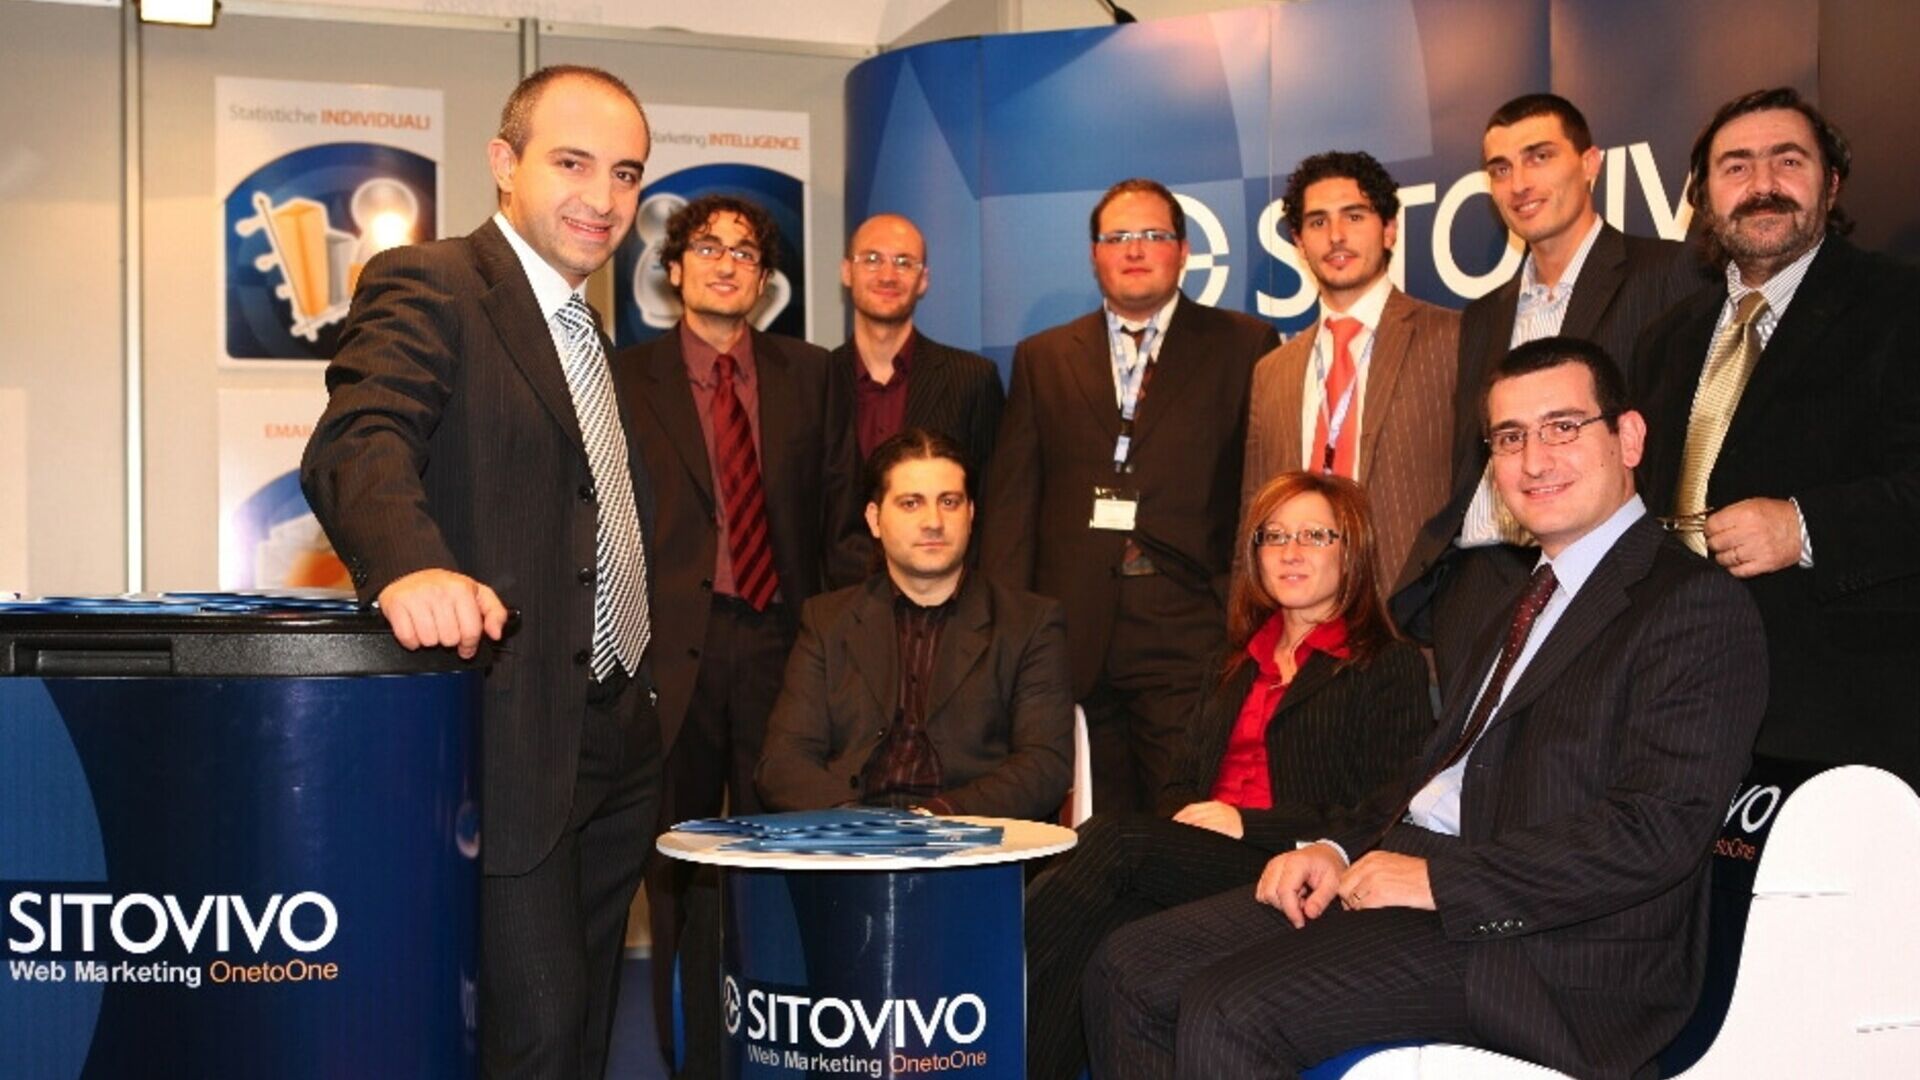 Het personeel van het bedrijf SitoVivo uit Turijn en Giarre (Catania)